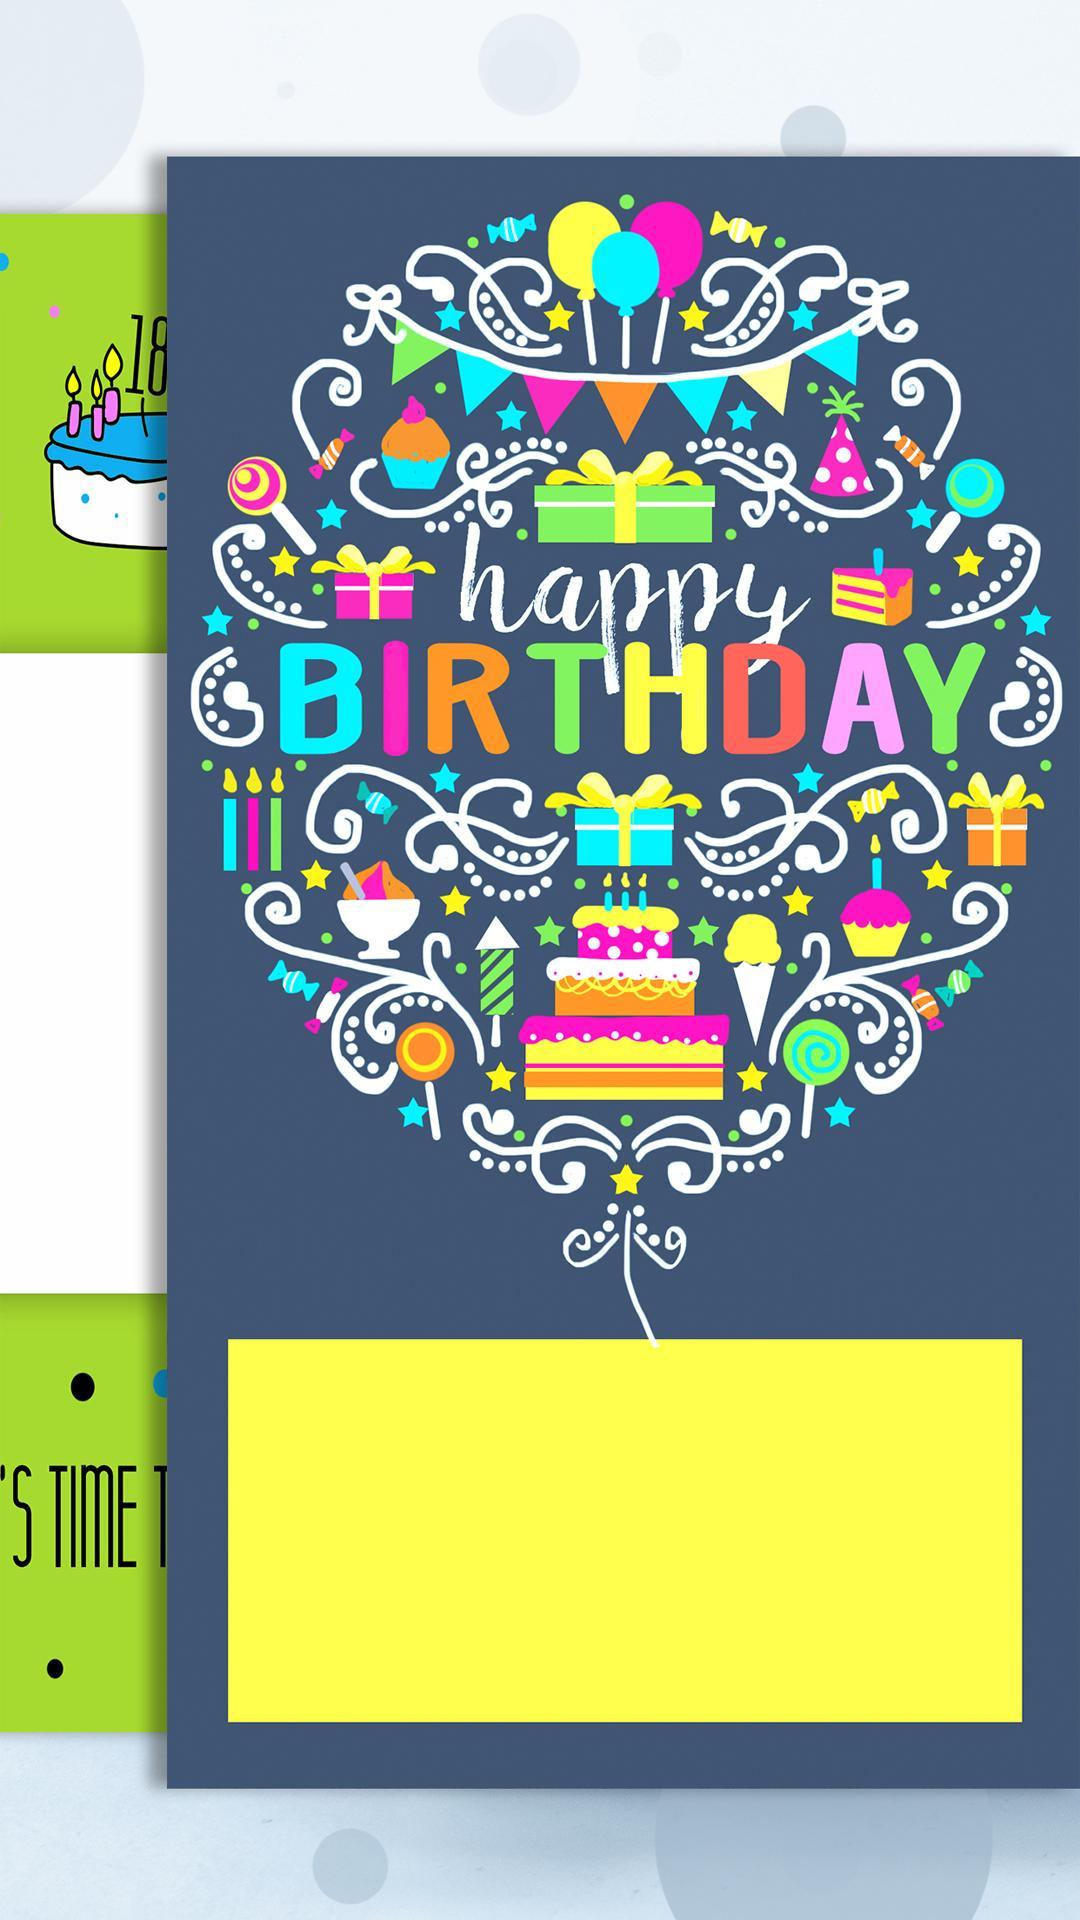 Android 用の お誕生日おめでとうございますグリーティングカード Apk をダウンロード